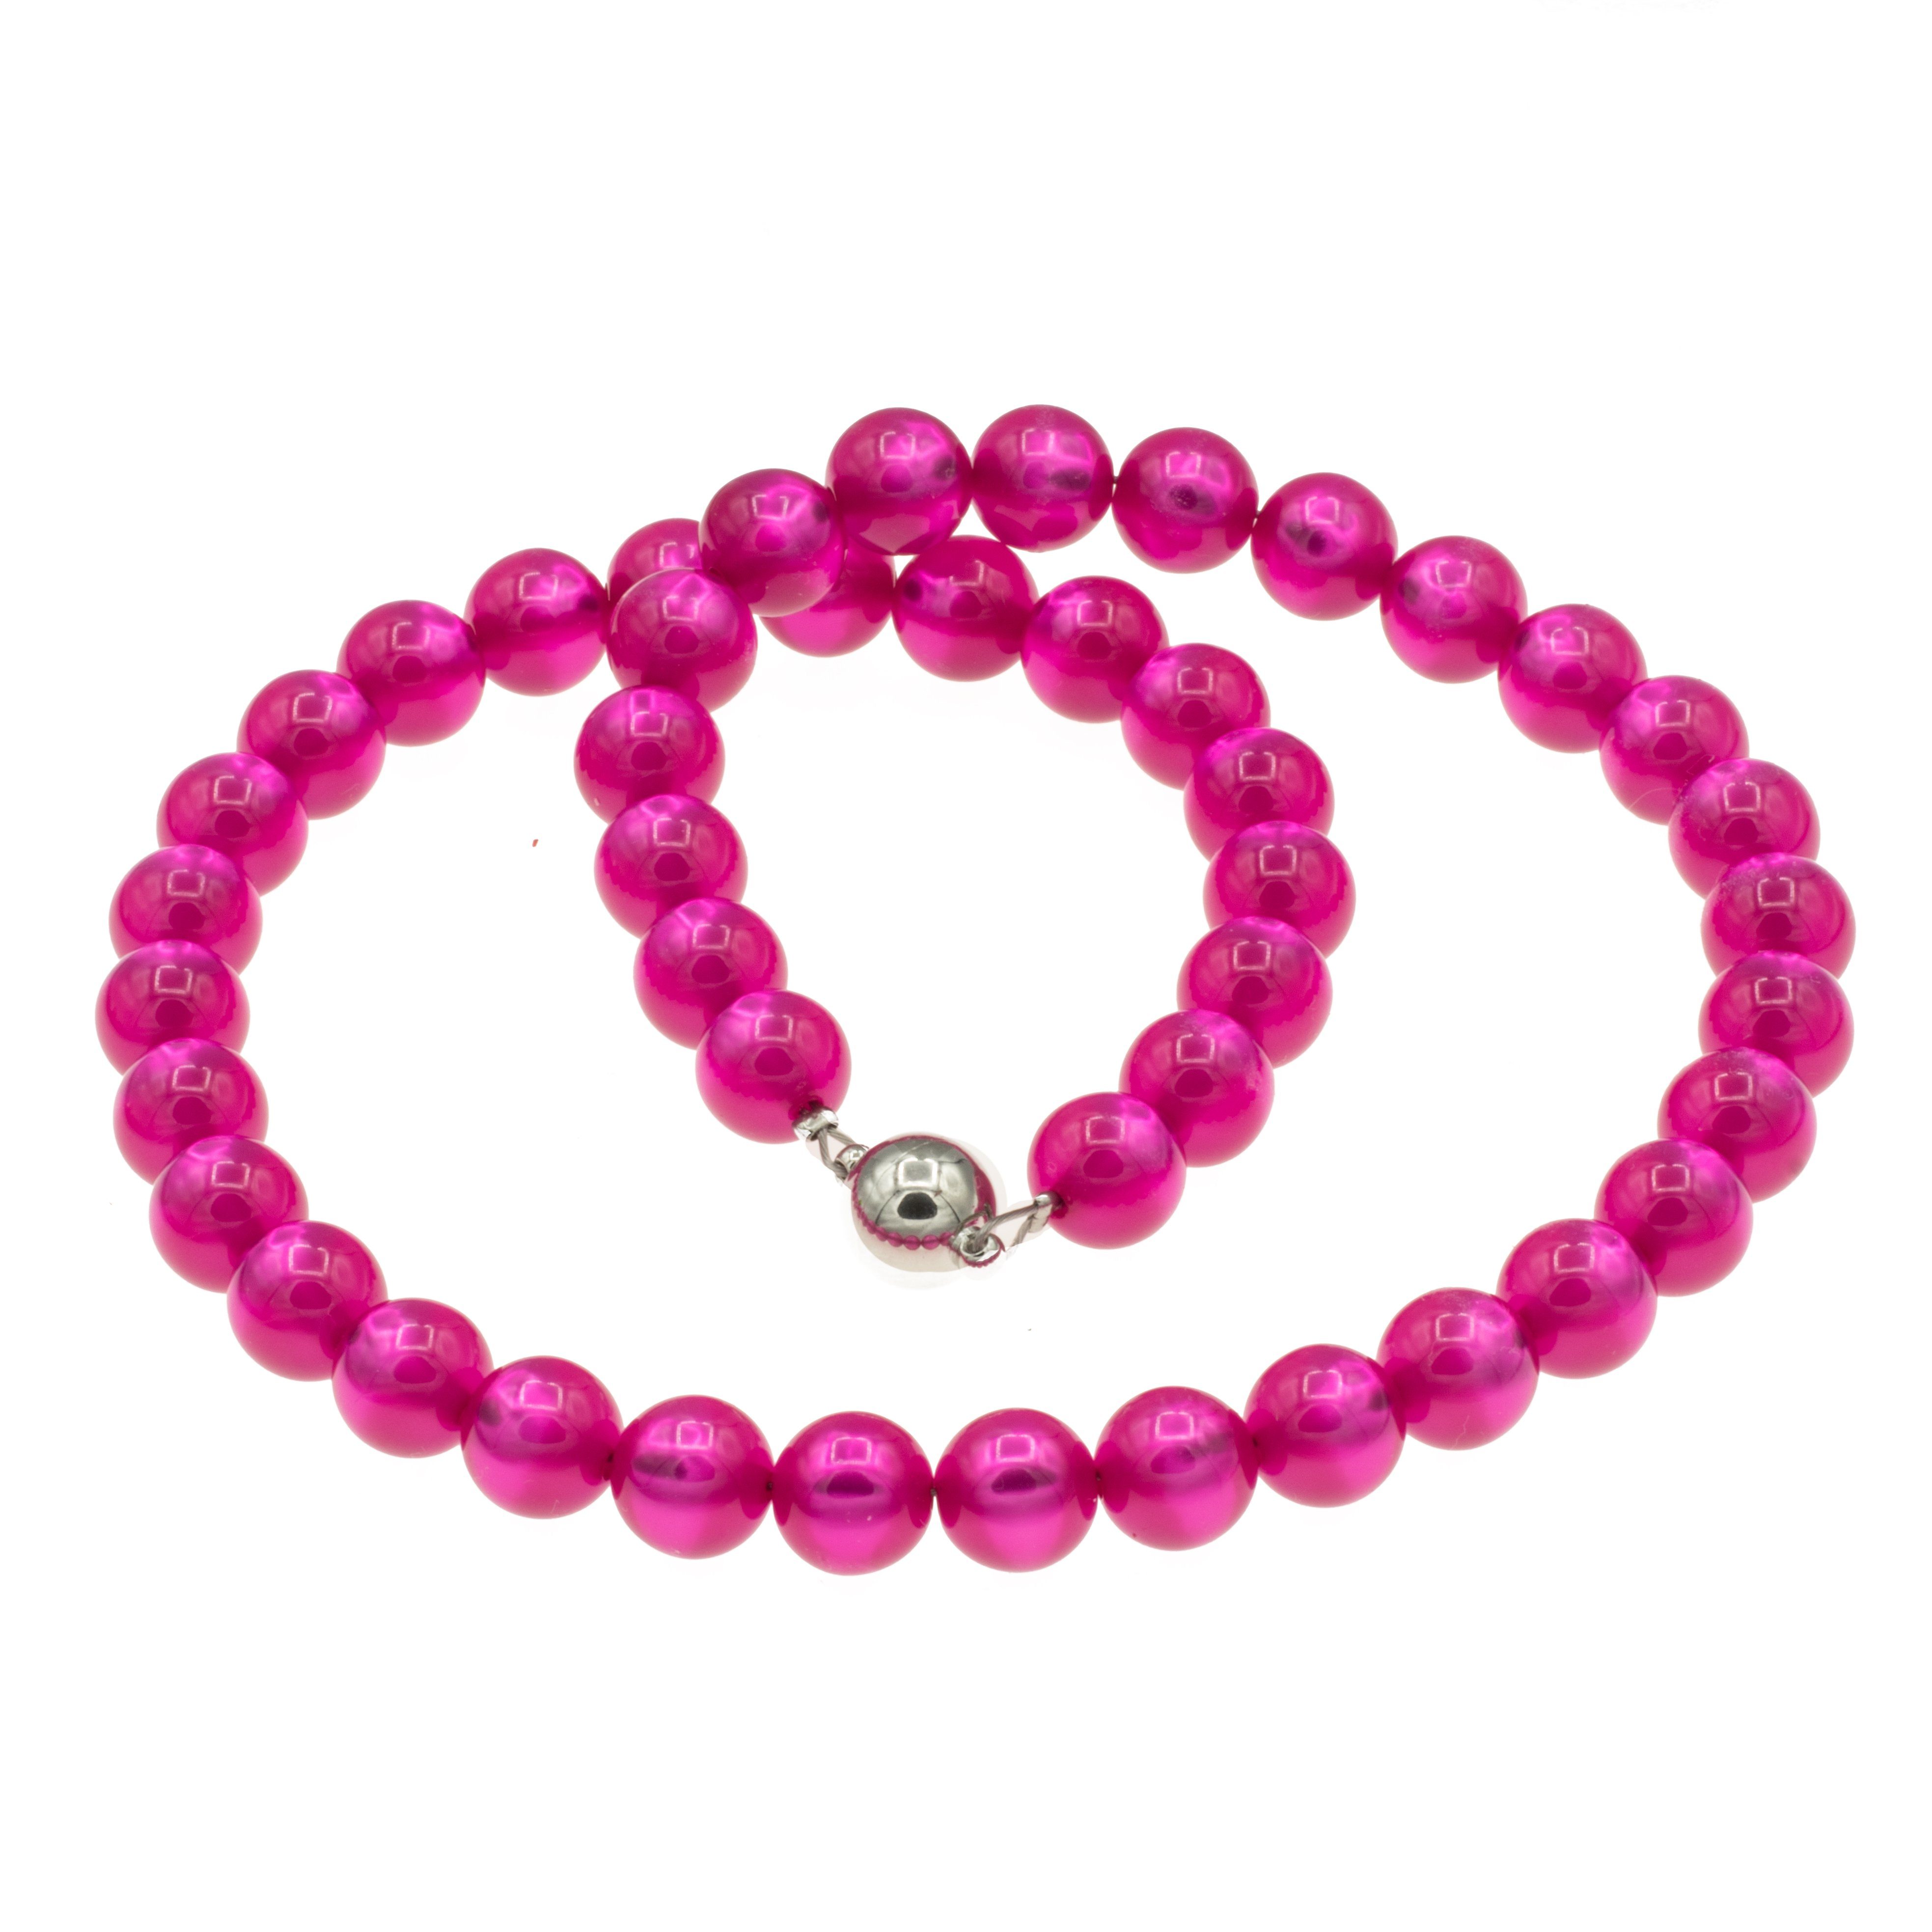 Bella Carina Perlenkette Kette mit pink farbenen glänzenden Polaris Perlen  10 mm Durchmesser, pink